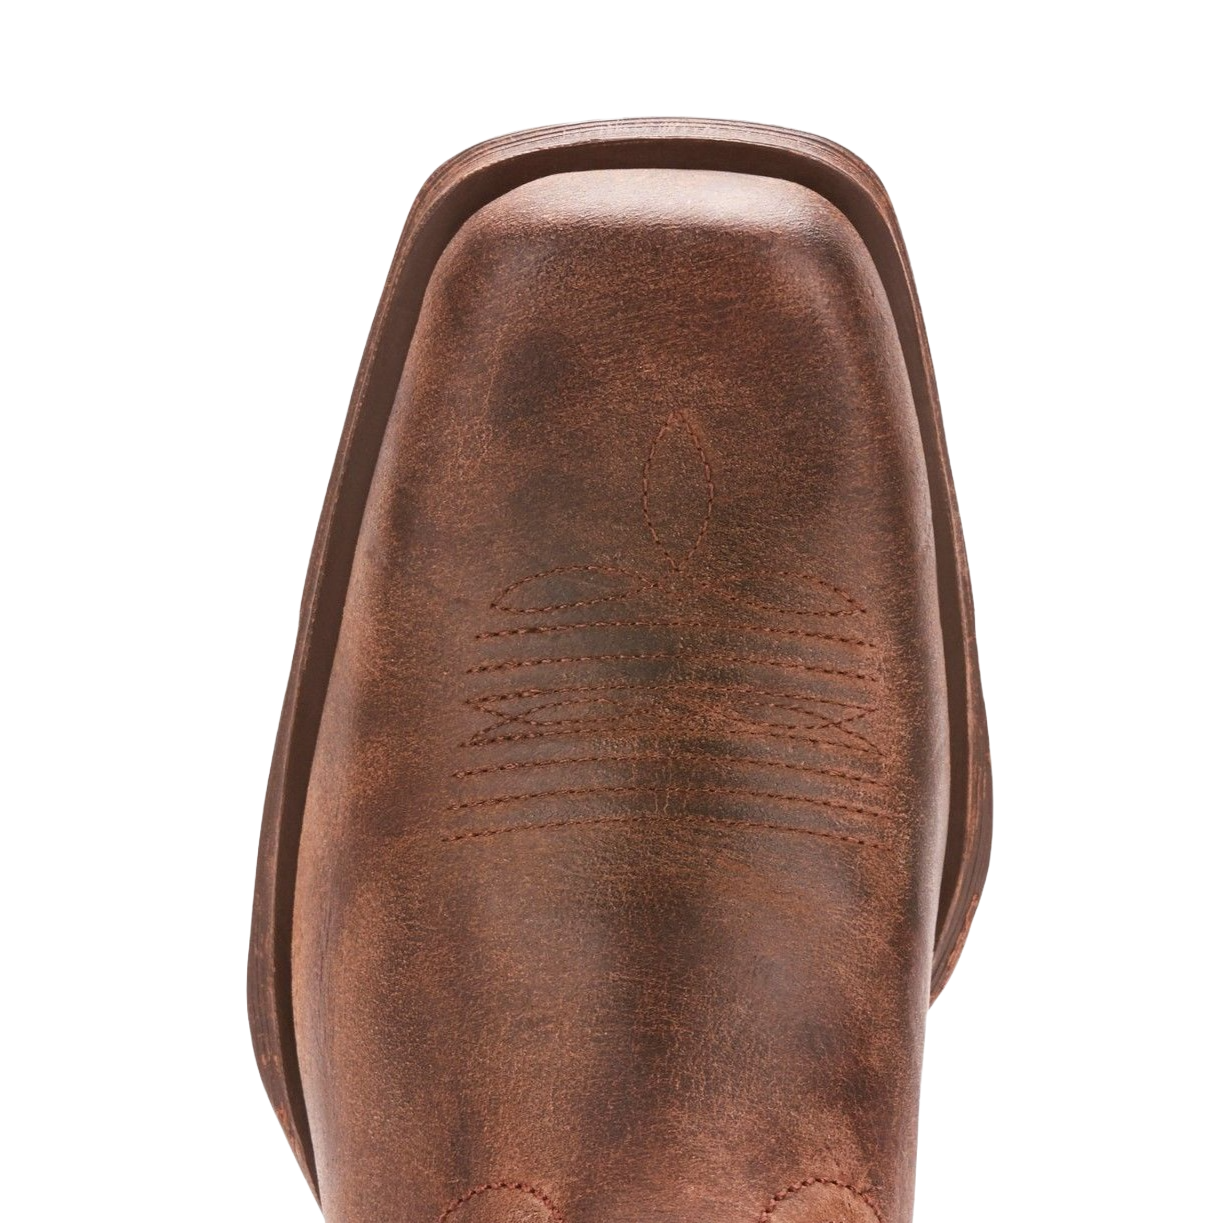 Ariat® Men's Rambler Antiqued Grey Square Toe Boots 10025171